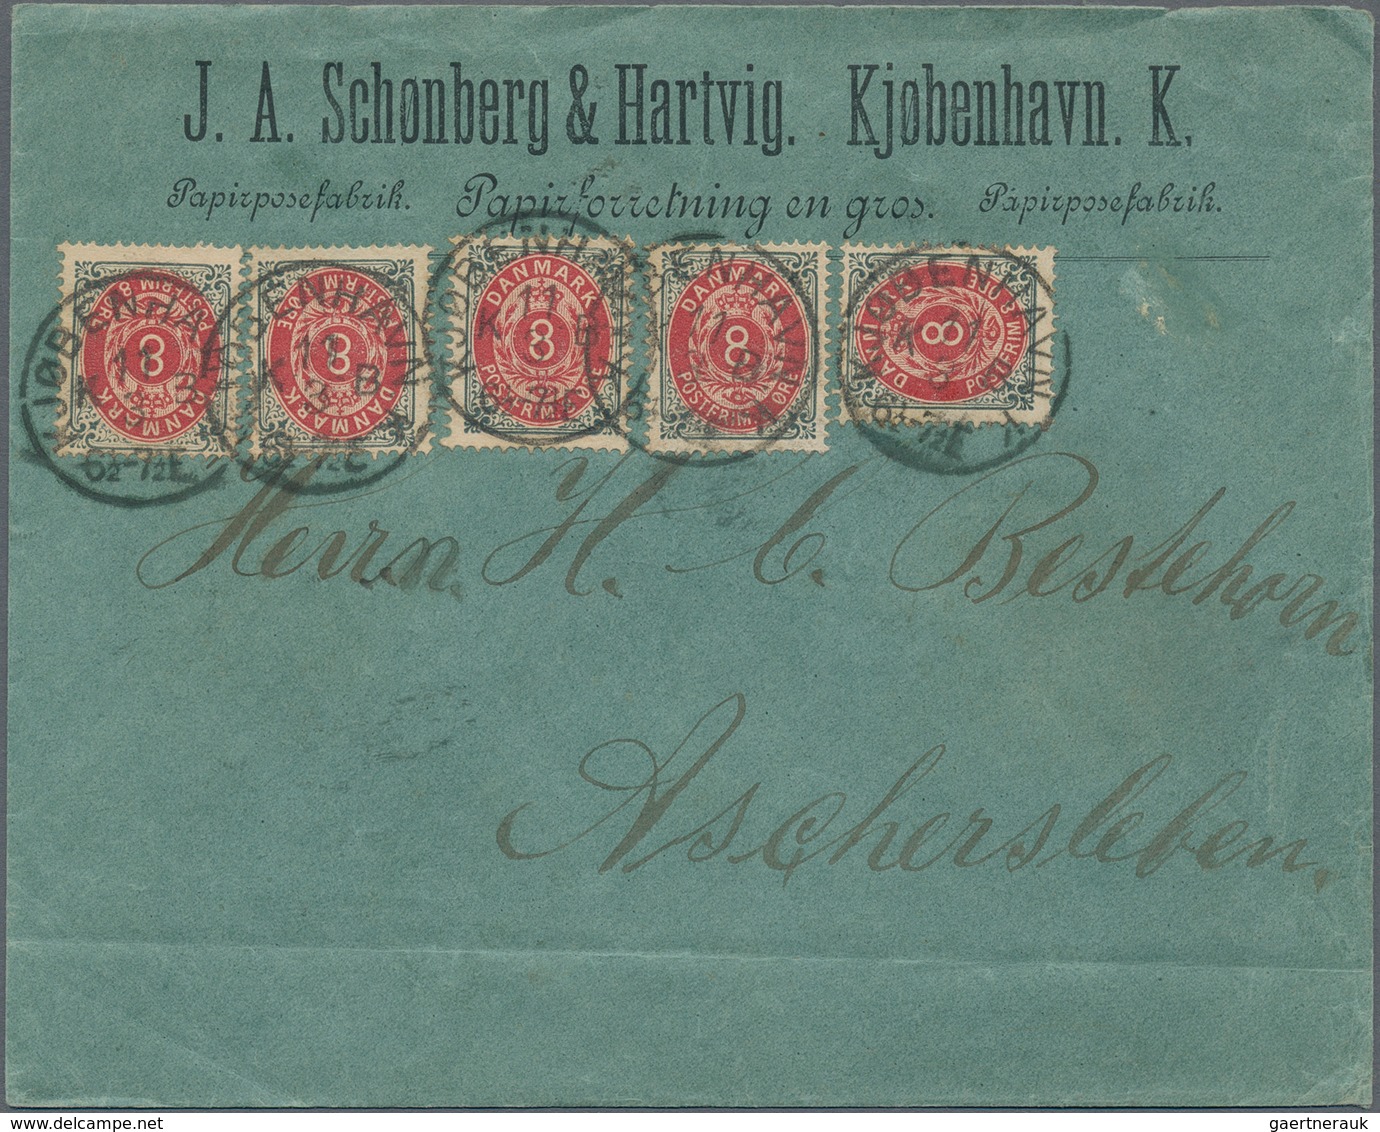 Dänemark: 1852-1980, vielseitiger Posten mit über 200 Briefen, Belegen und Ganzsachen, dabei auch be